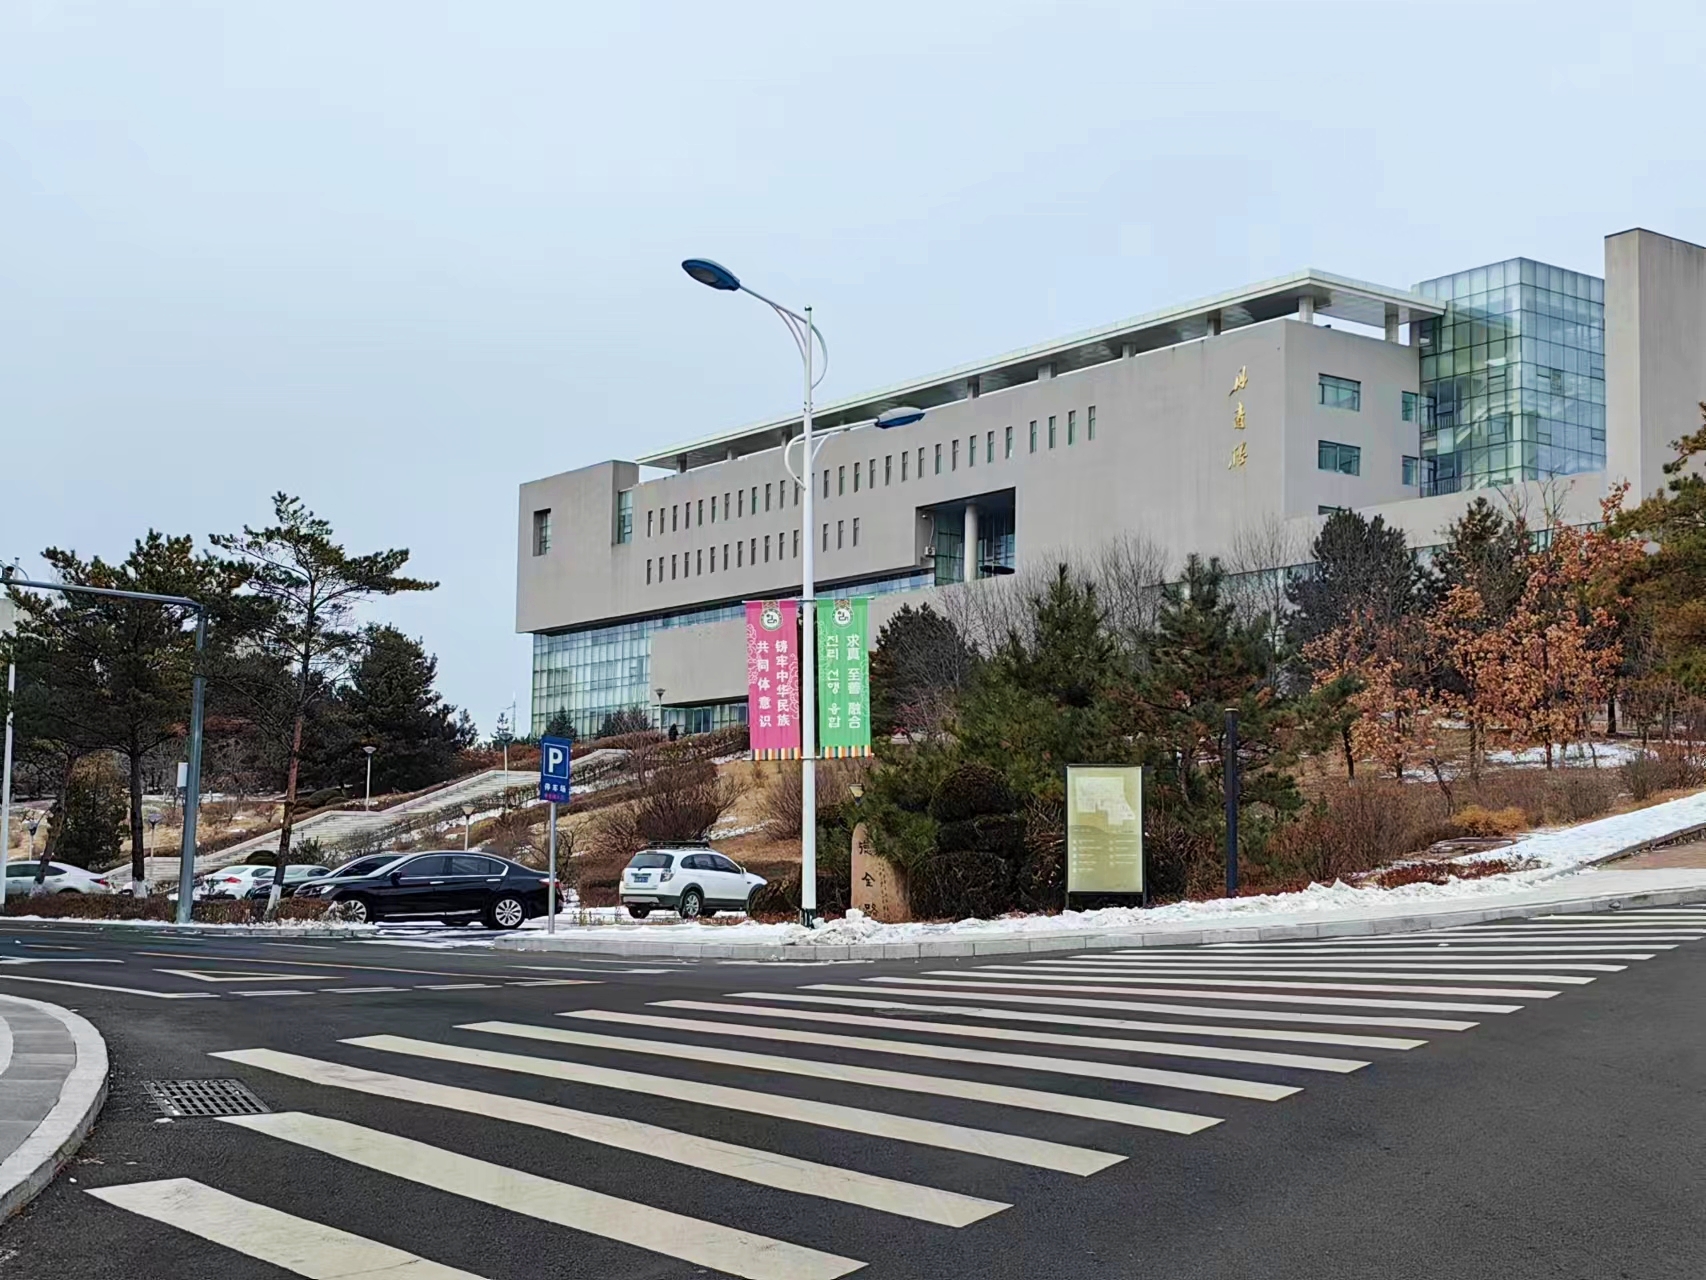 延边大学校园风光优美,设施一流,进入校园就能感受到浓郁的朝鲜族